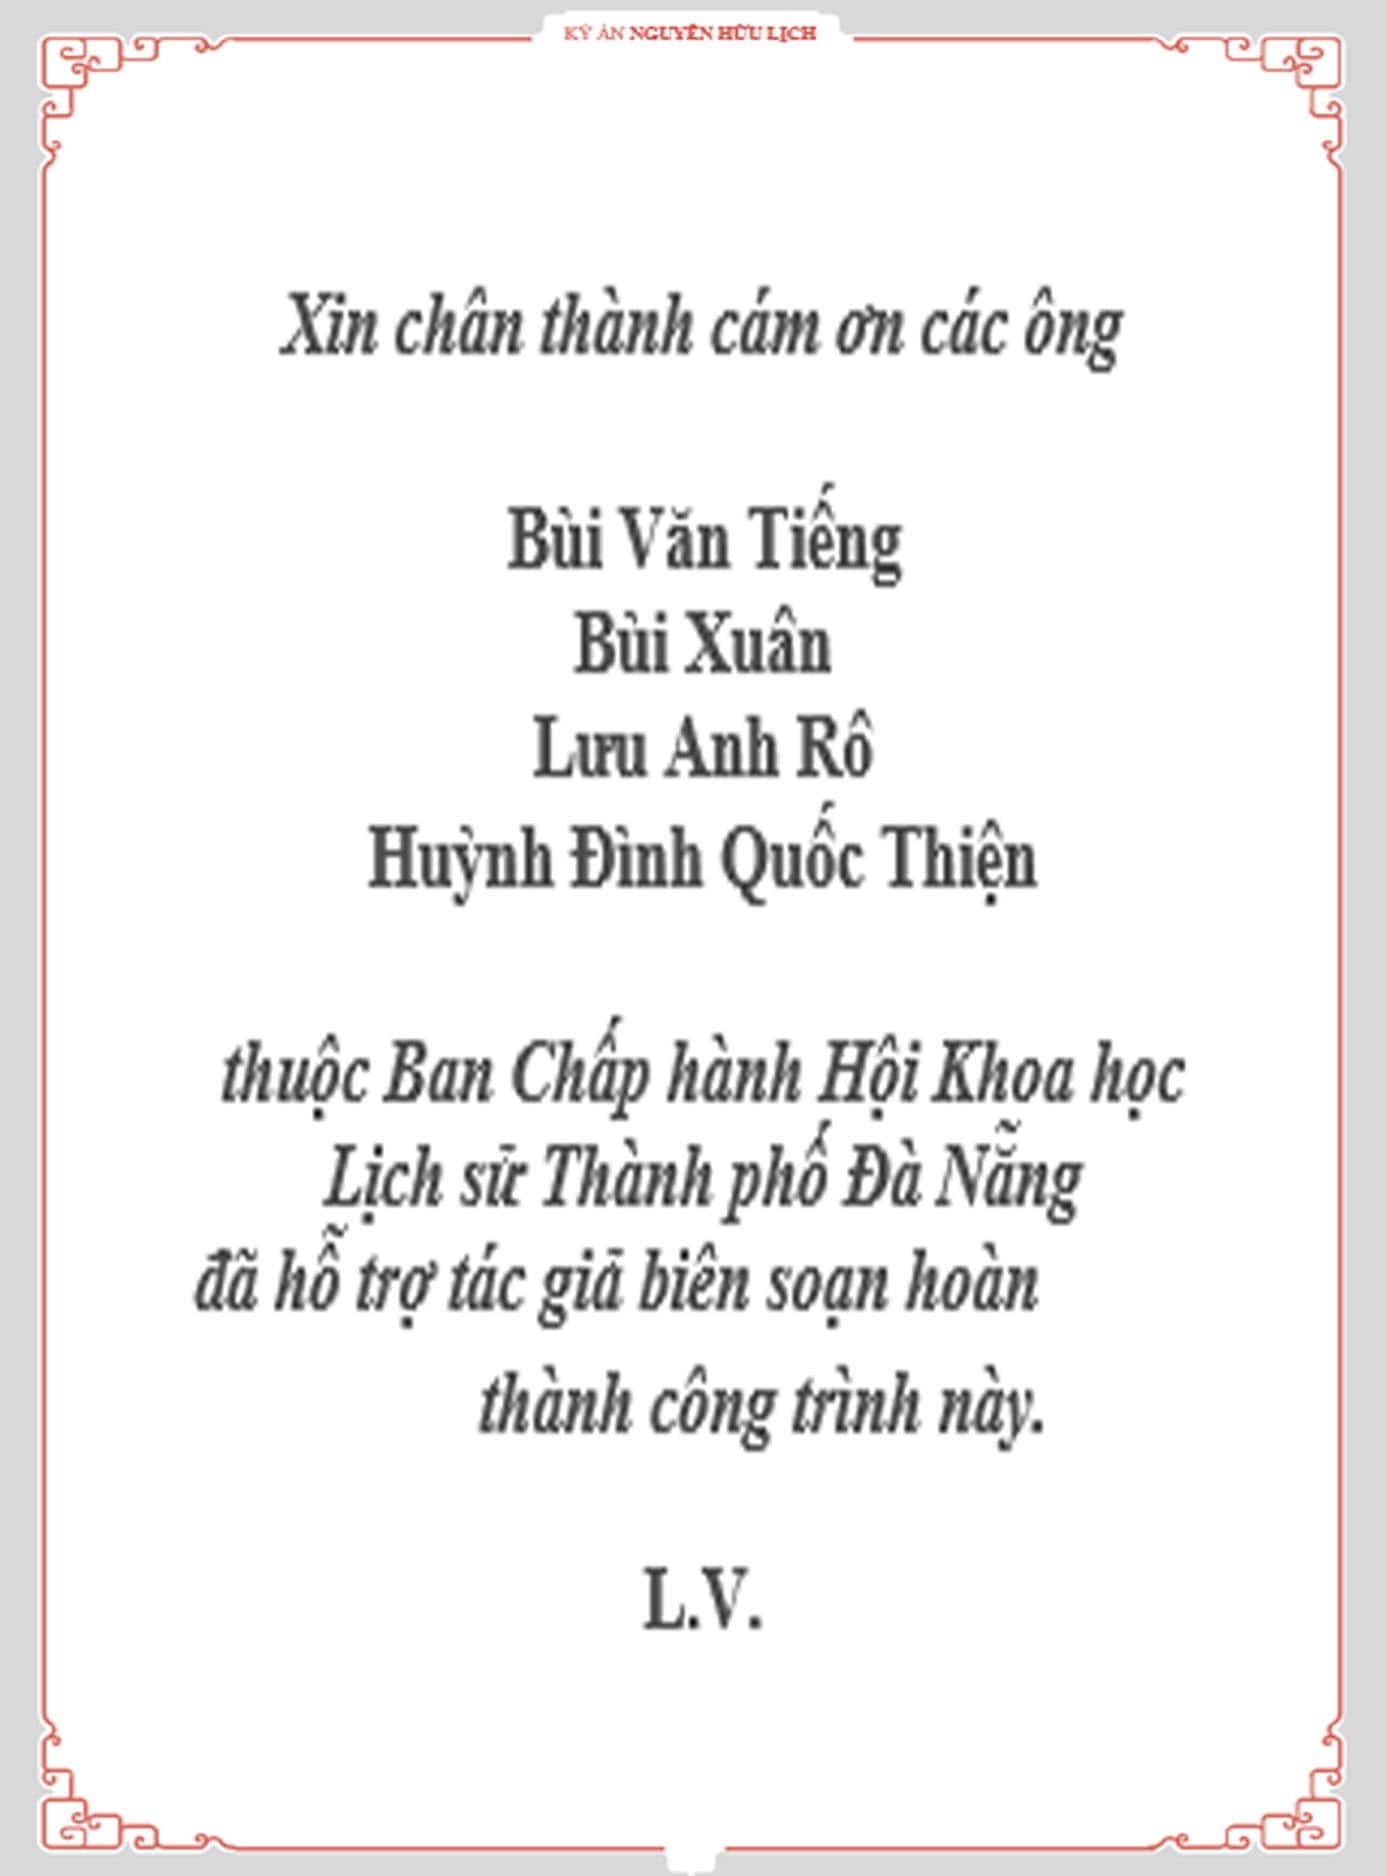 Cam on min - Kỳ án Nguyễn Hữu Lịch - Chương 1 - Tác giả: TS. Lâm Vinh